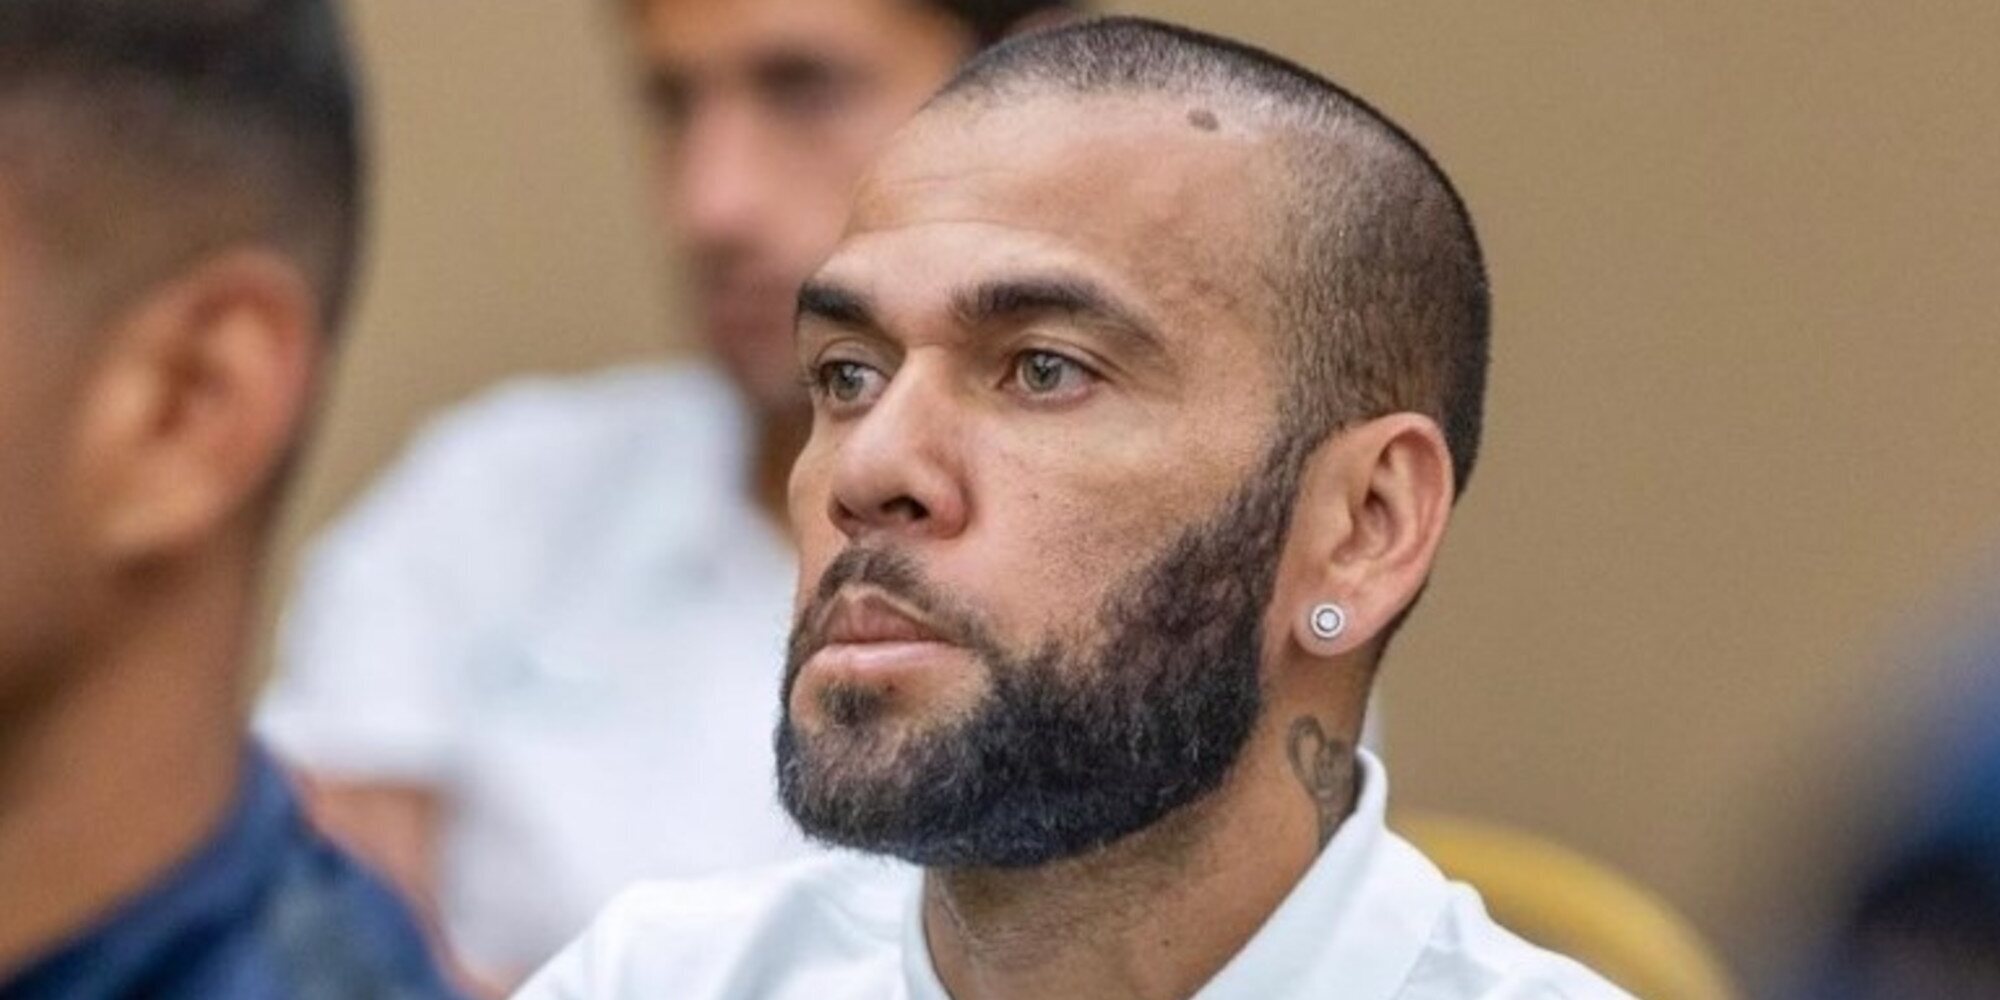 Las primeras horas de prisión de Dani Alves: "Está completamente destrozado"